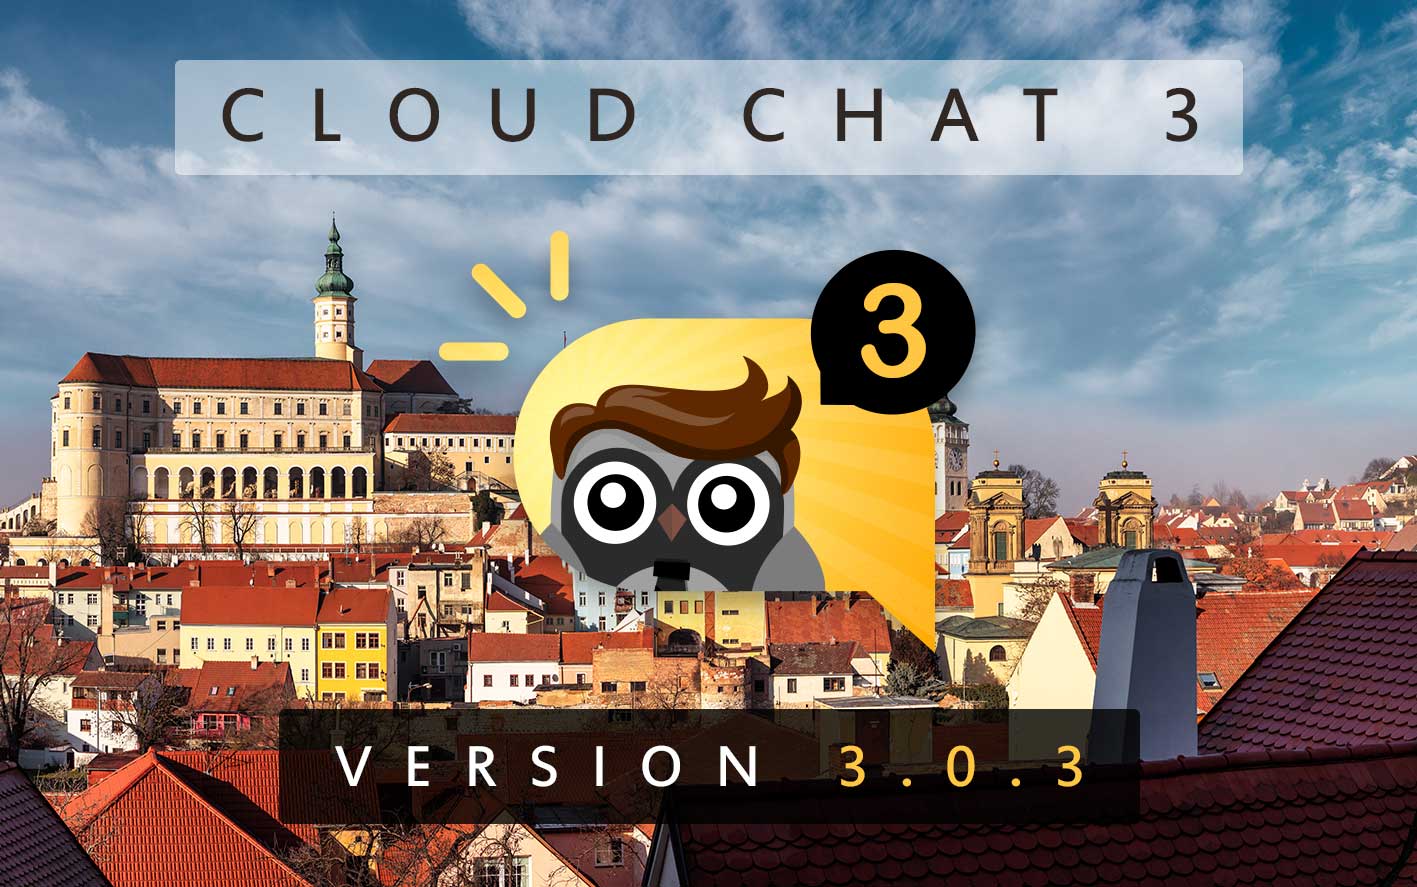 Cloud Chat 3 - Version 3.0.3